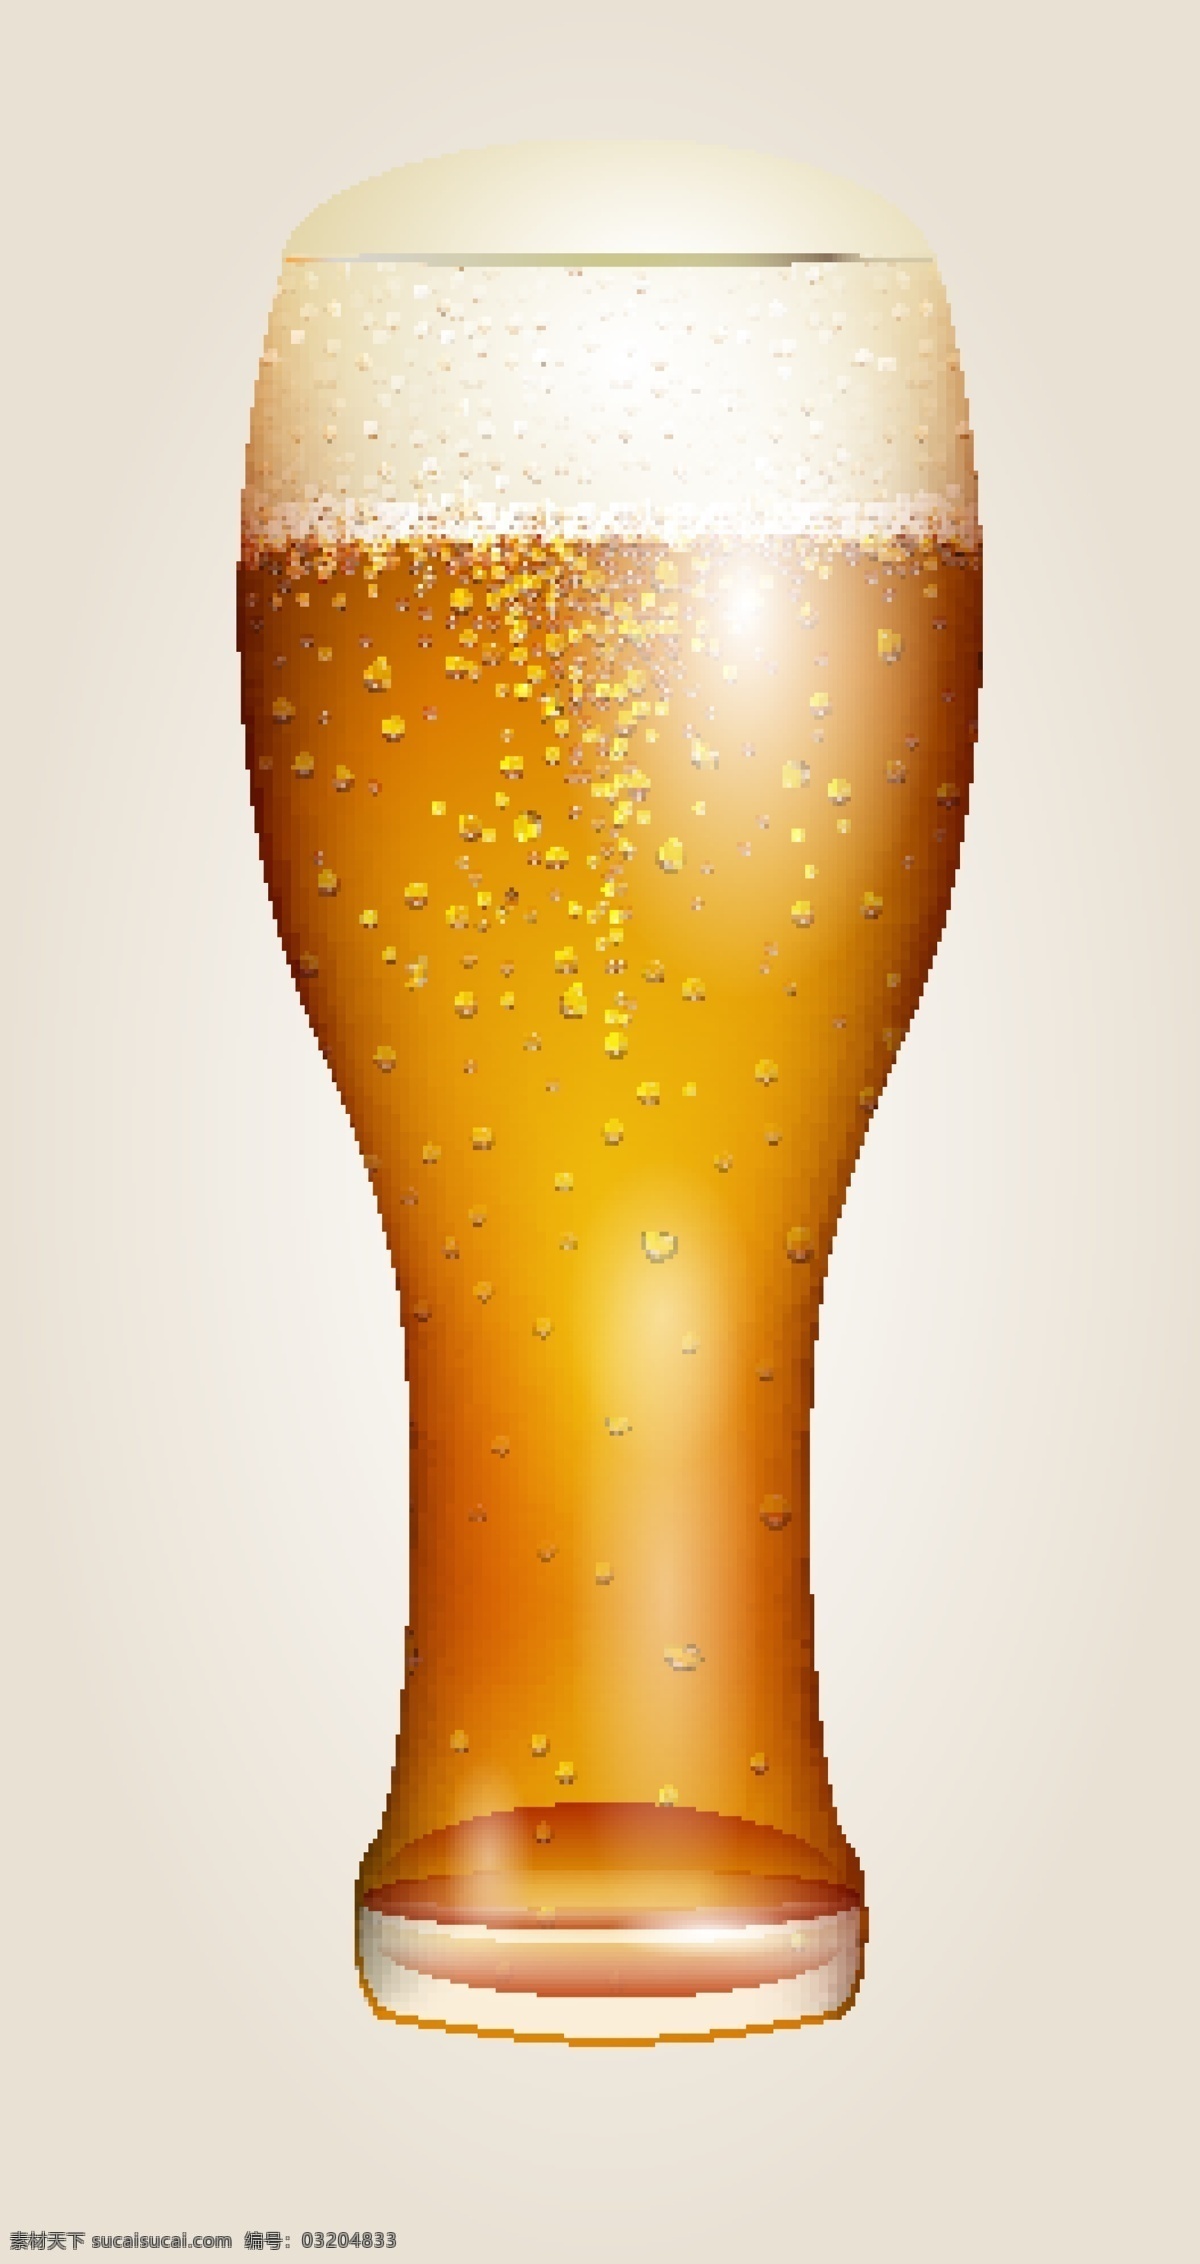 德国 啤酒节 啤酒广告 啤酒海报 手绘 饮料酒水 矢量 矢量图 其他矢量图